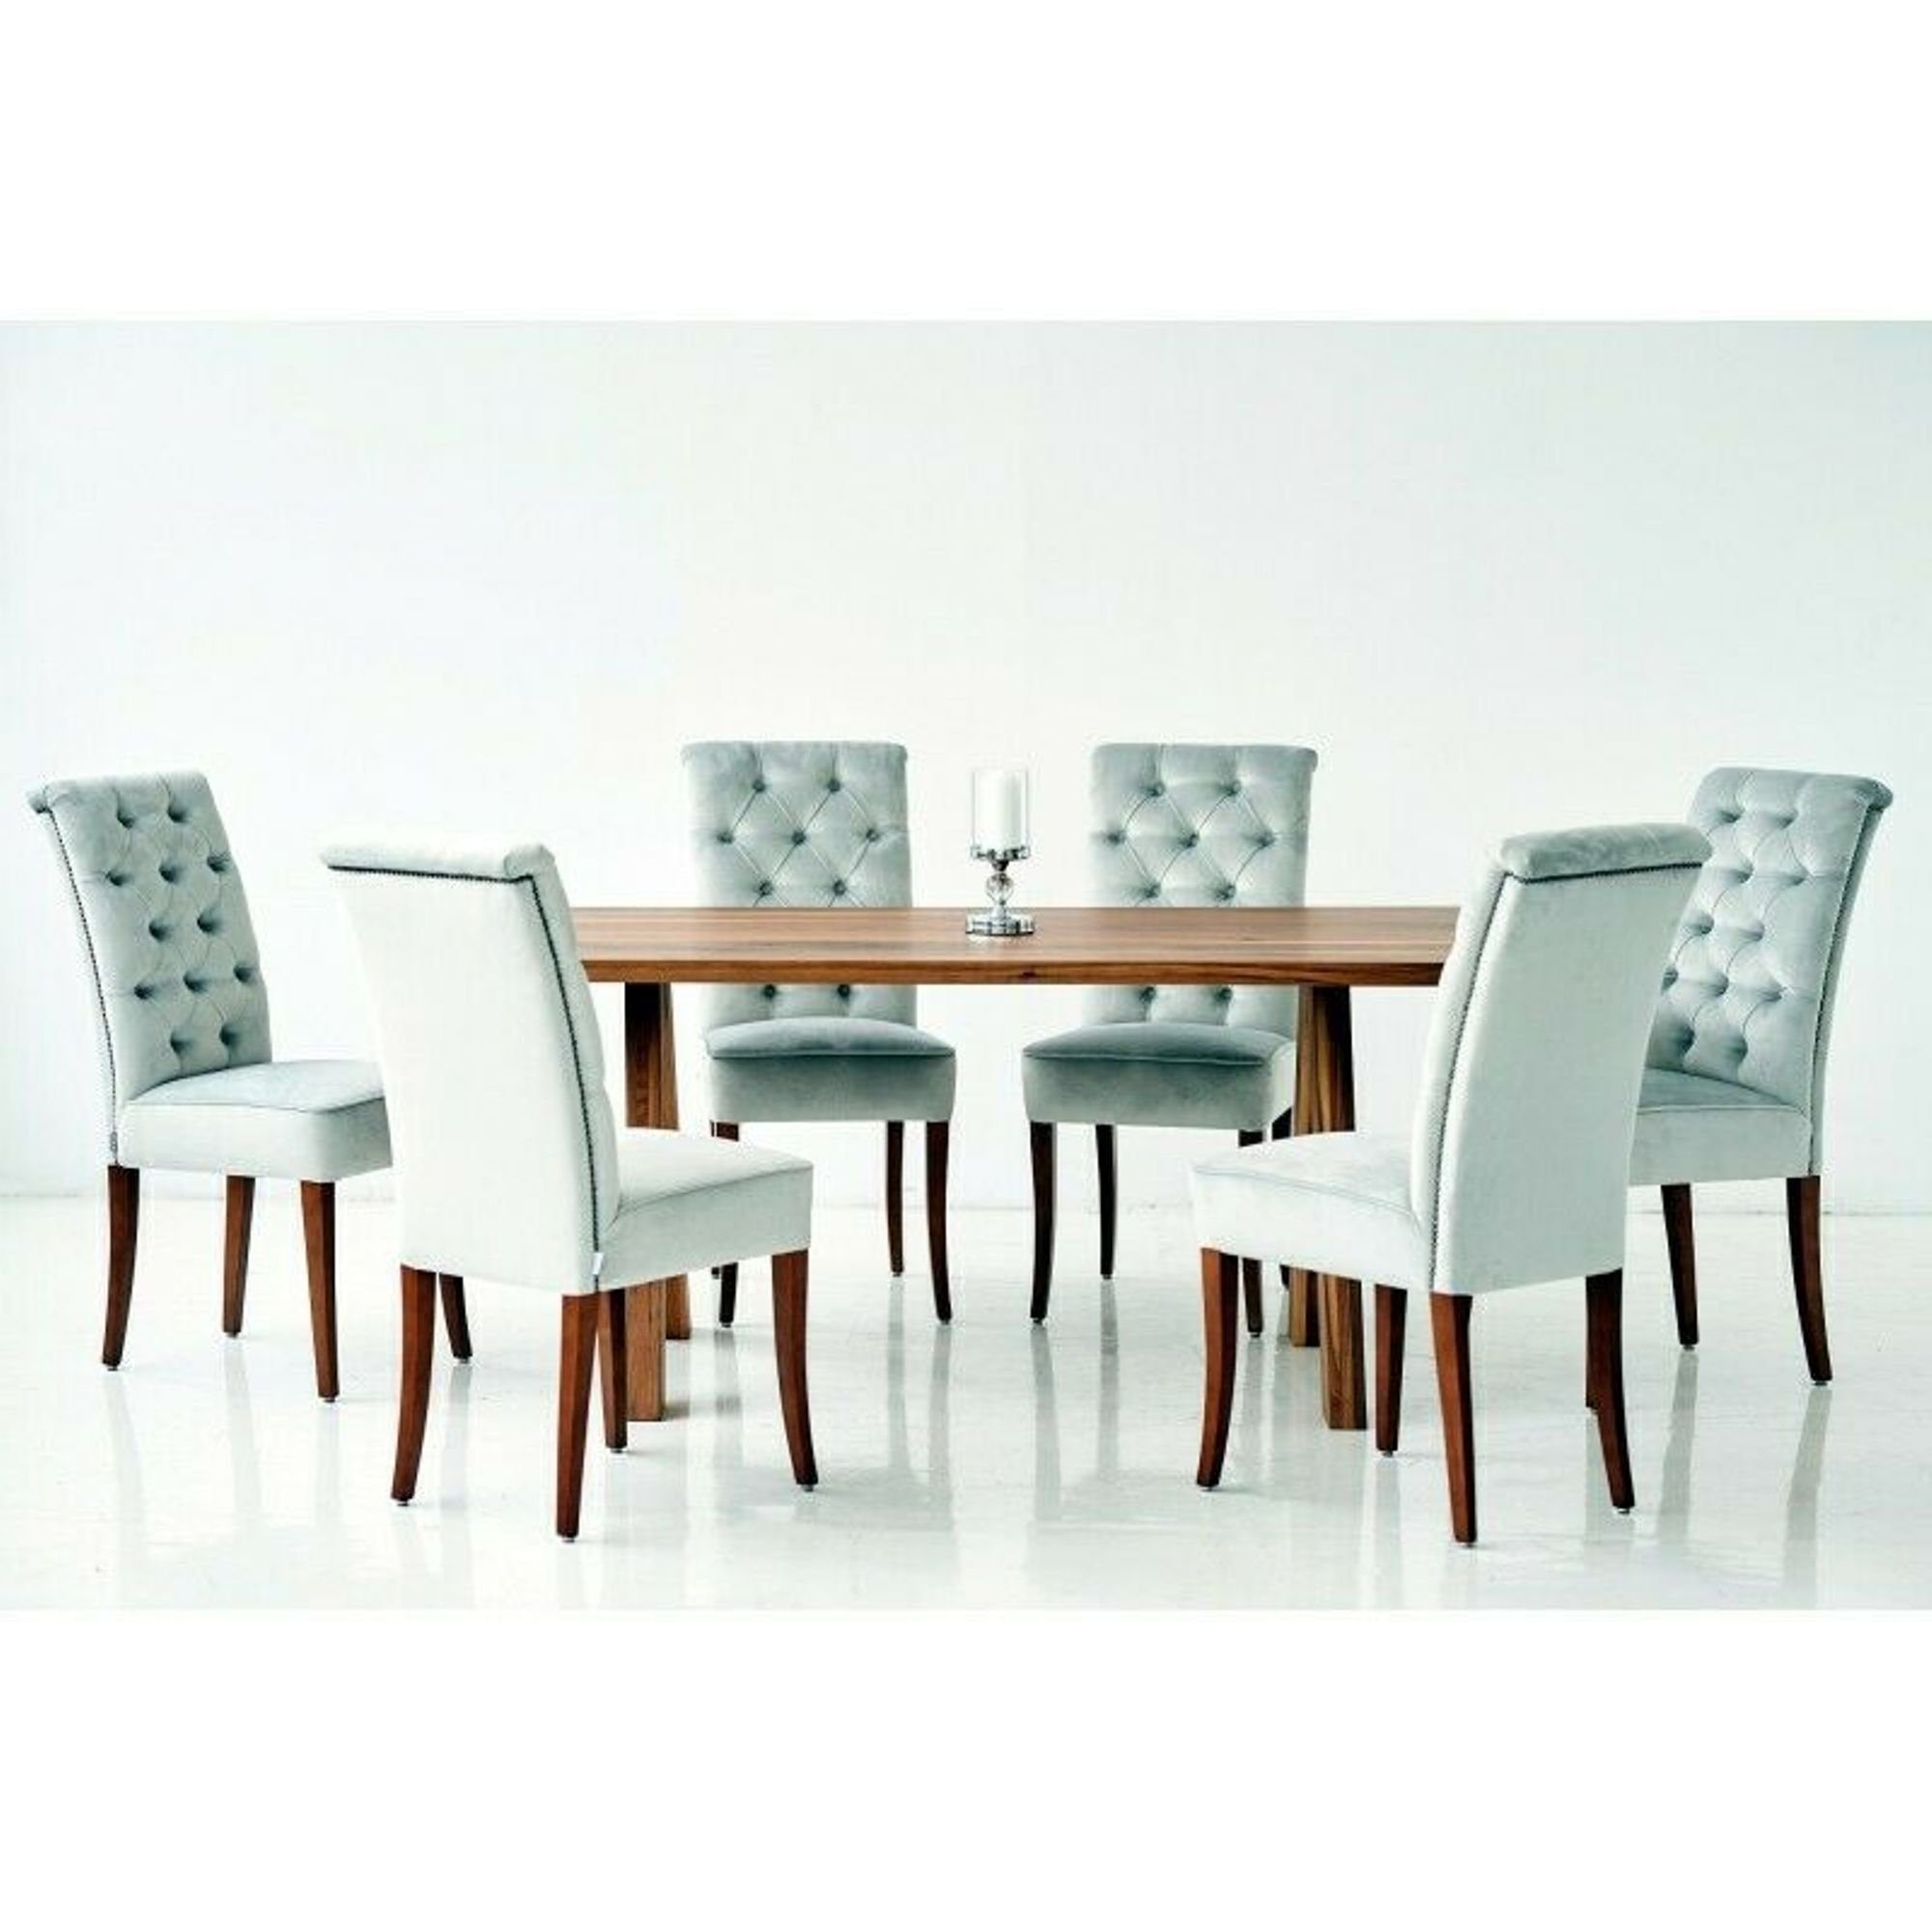 Stühle Stuhl Tisch Lehnstühle Chesterfield 4 Sitz Gruppe Essgruppe, Esszimmer Design JVmoebel Sessel